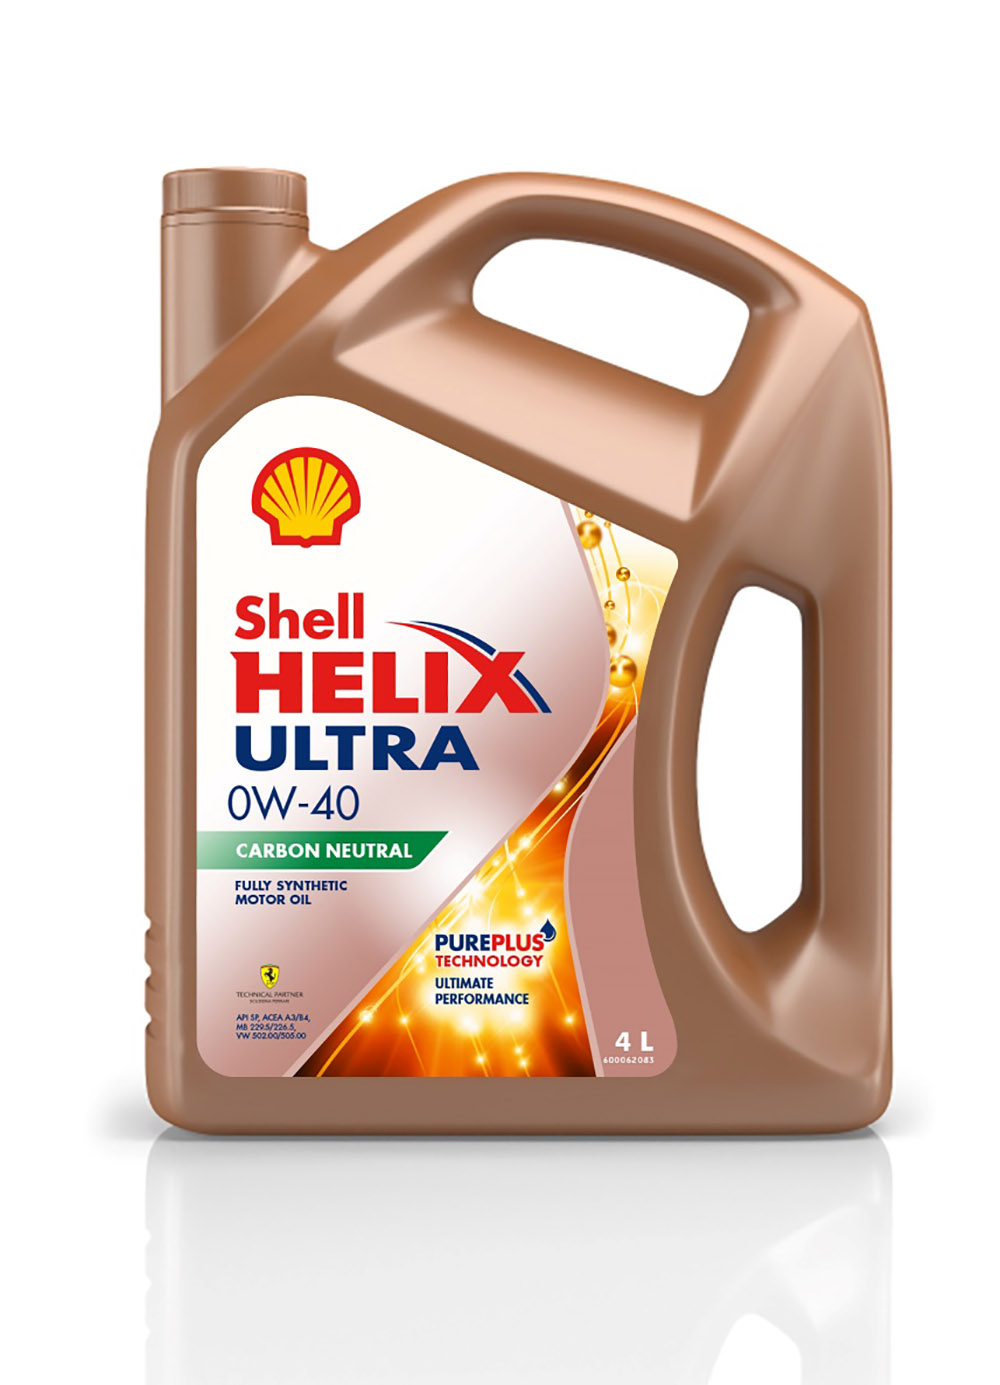 Shell Helix Ultra SP 0W-40 trung hòa carbon sở hữu công nghệ tiên tiến độc quyền PurePlus